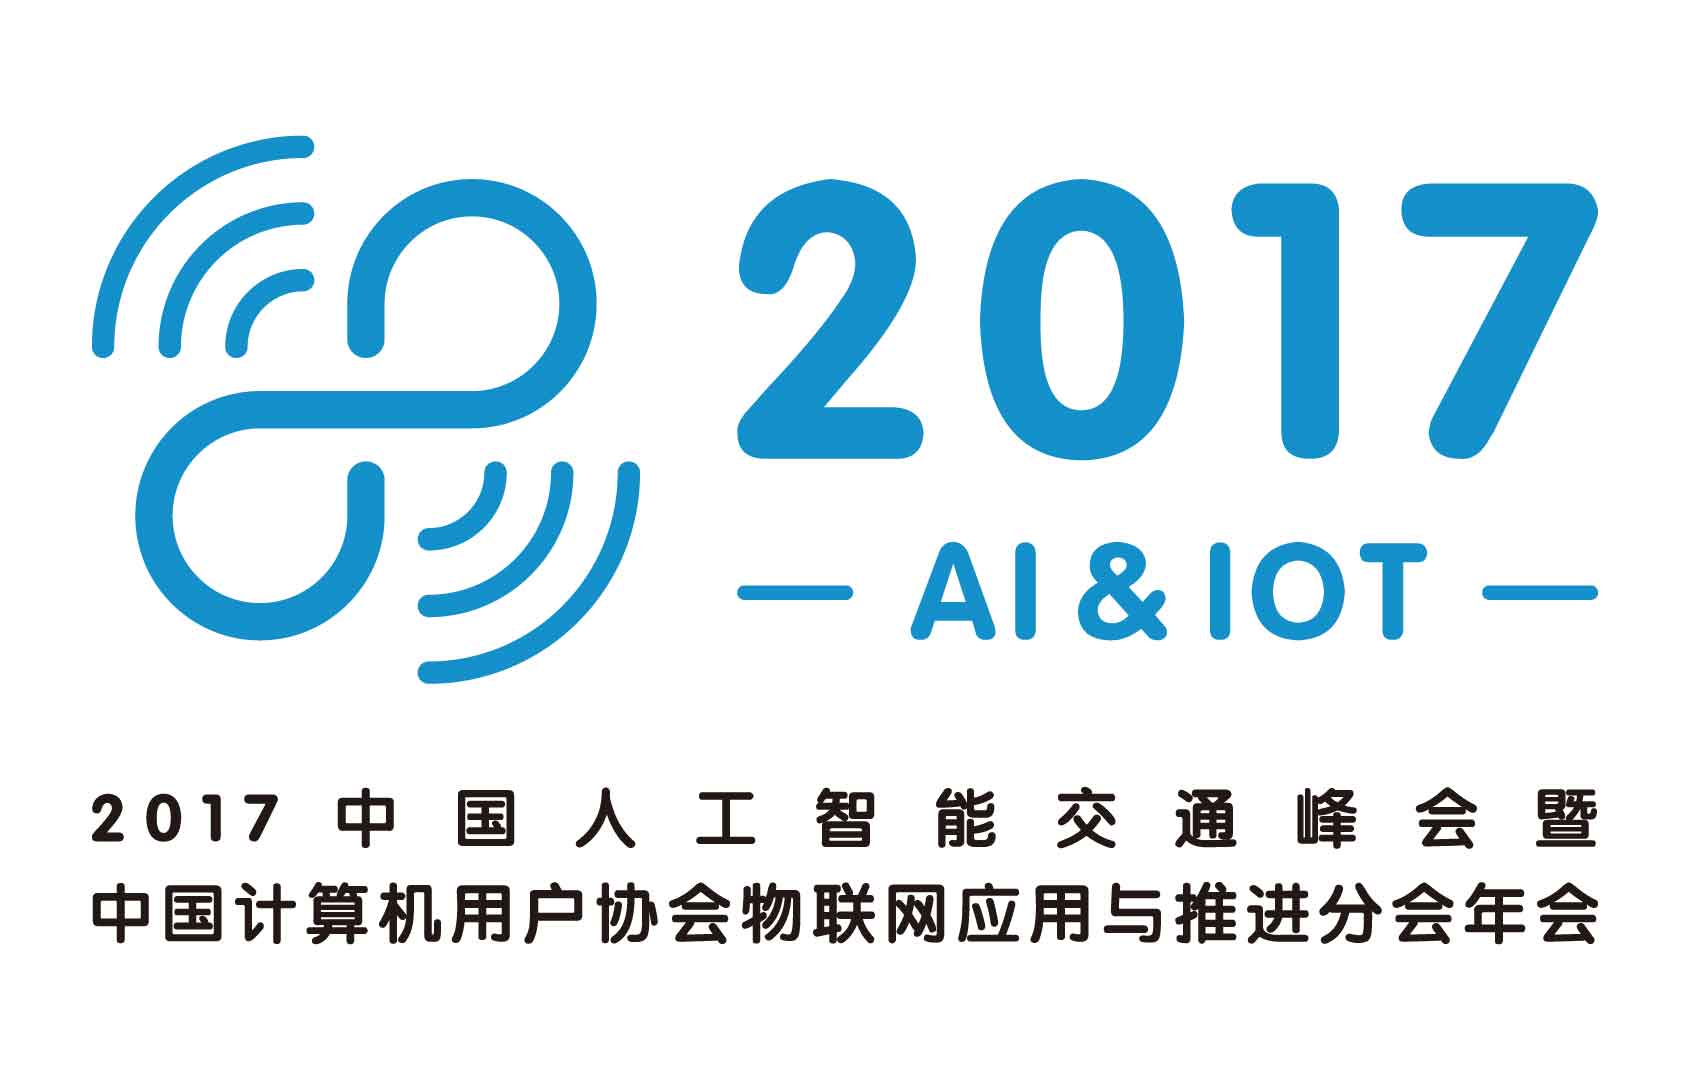 2017中国人工智能交通峰会